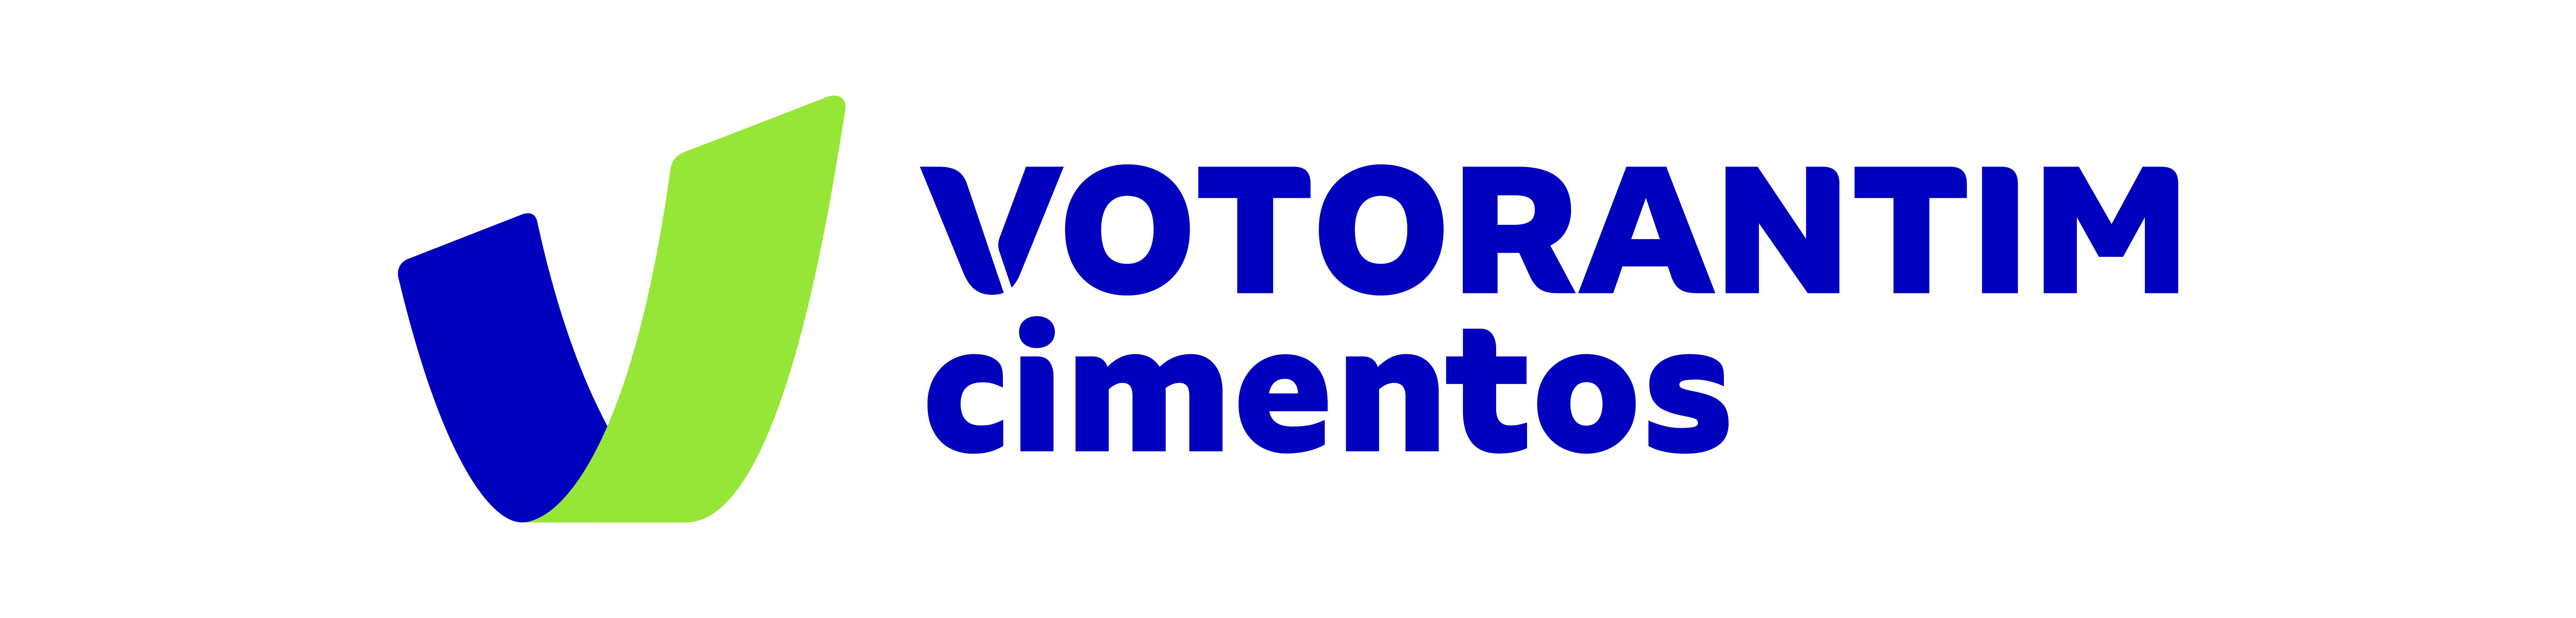 VC.Logo.Preferencial.png